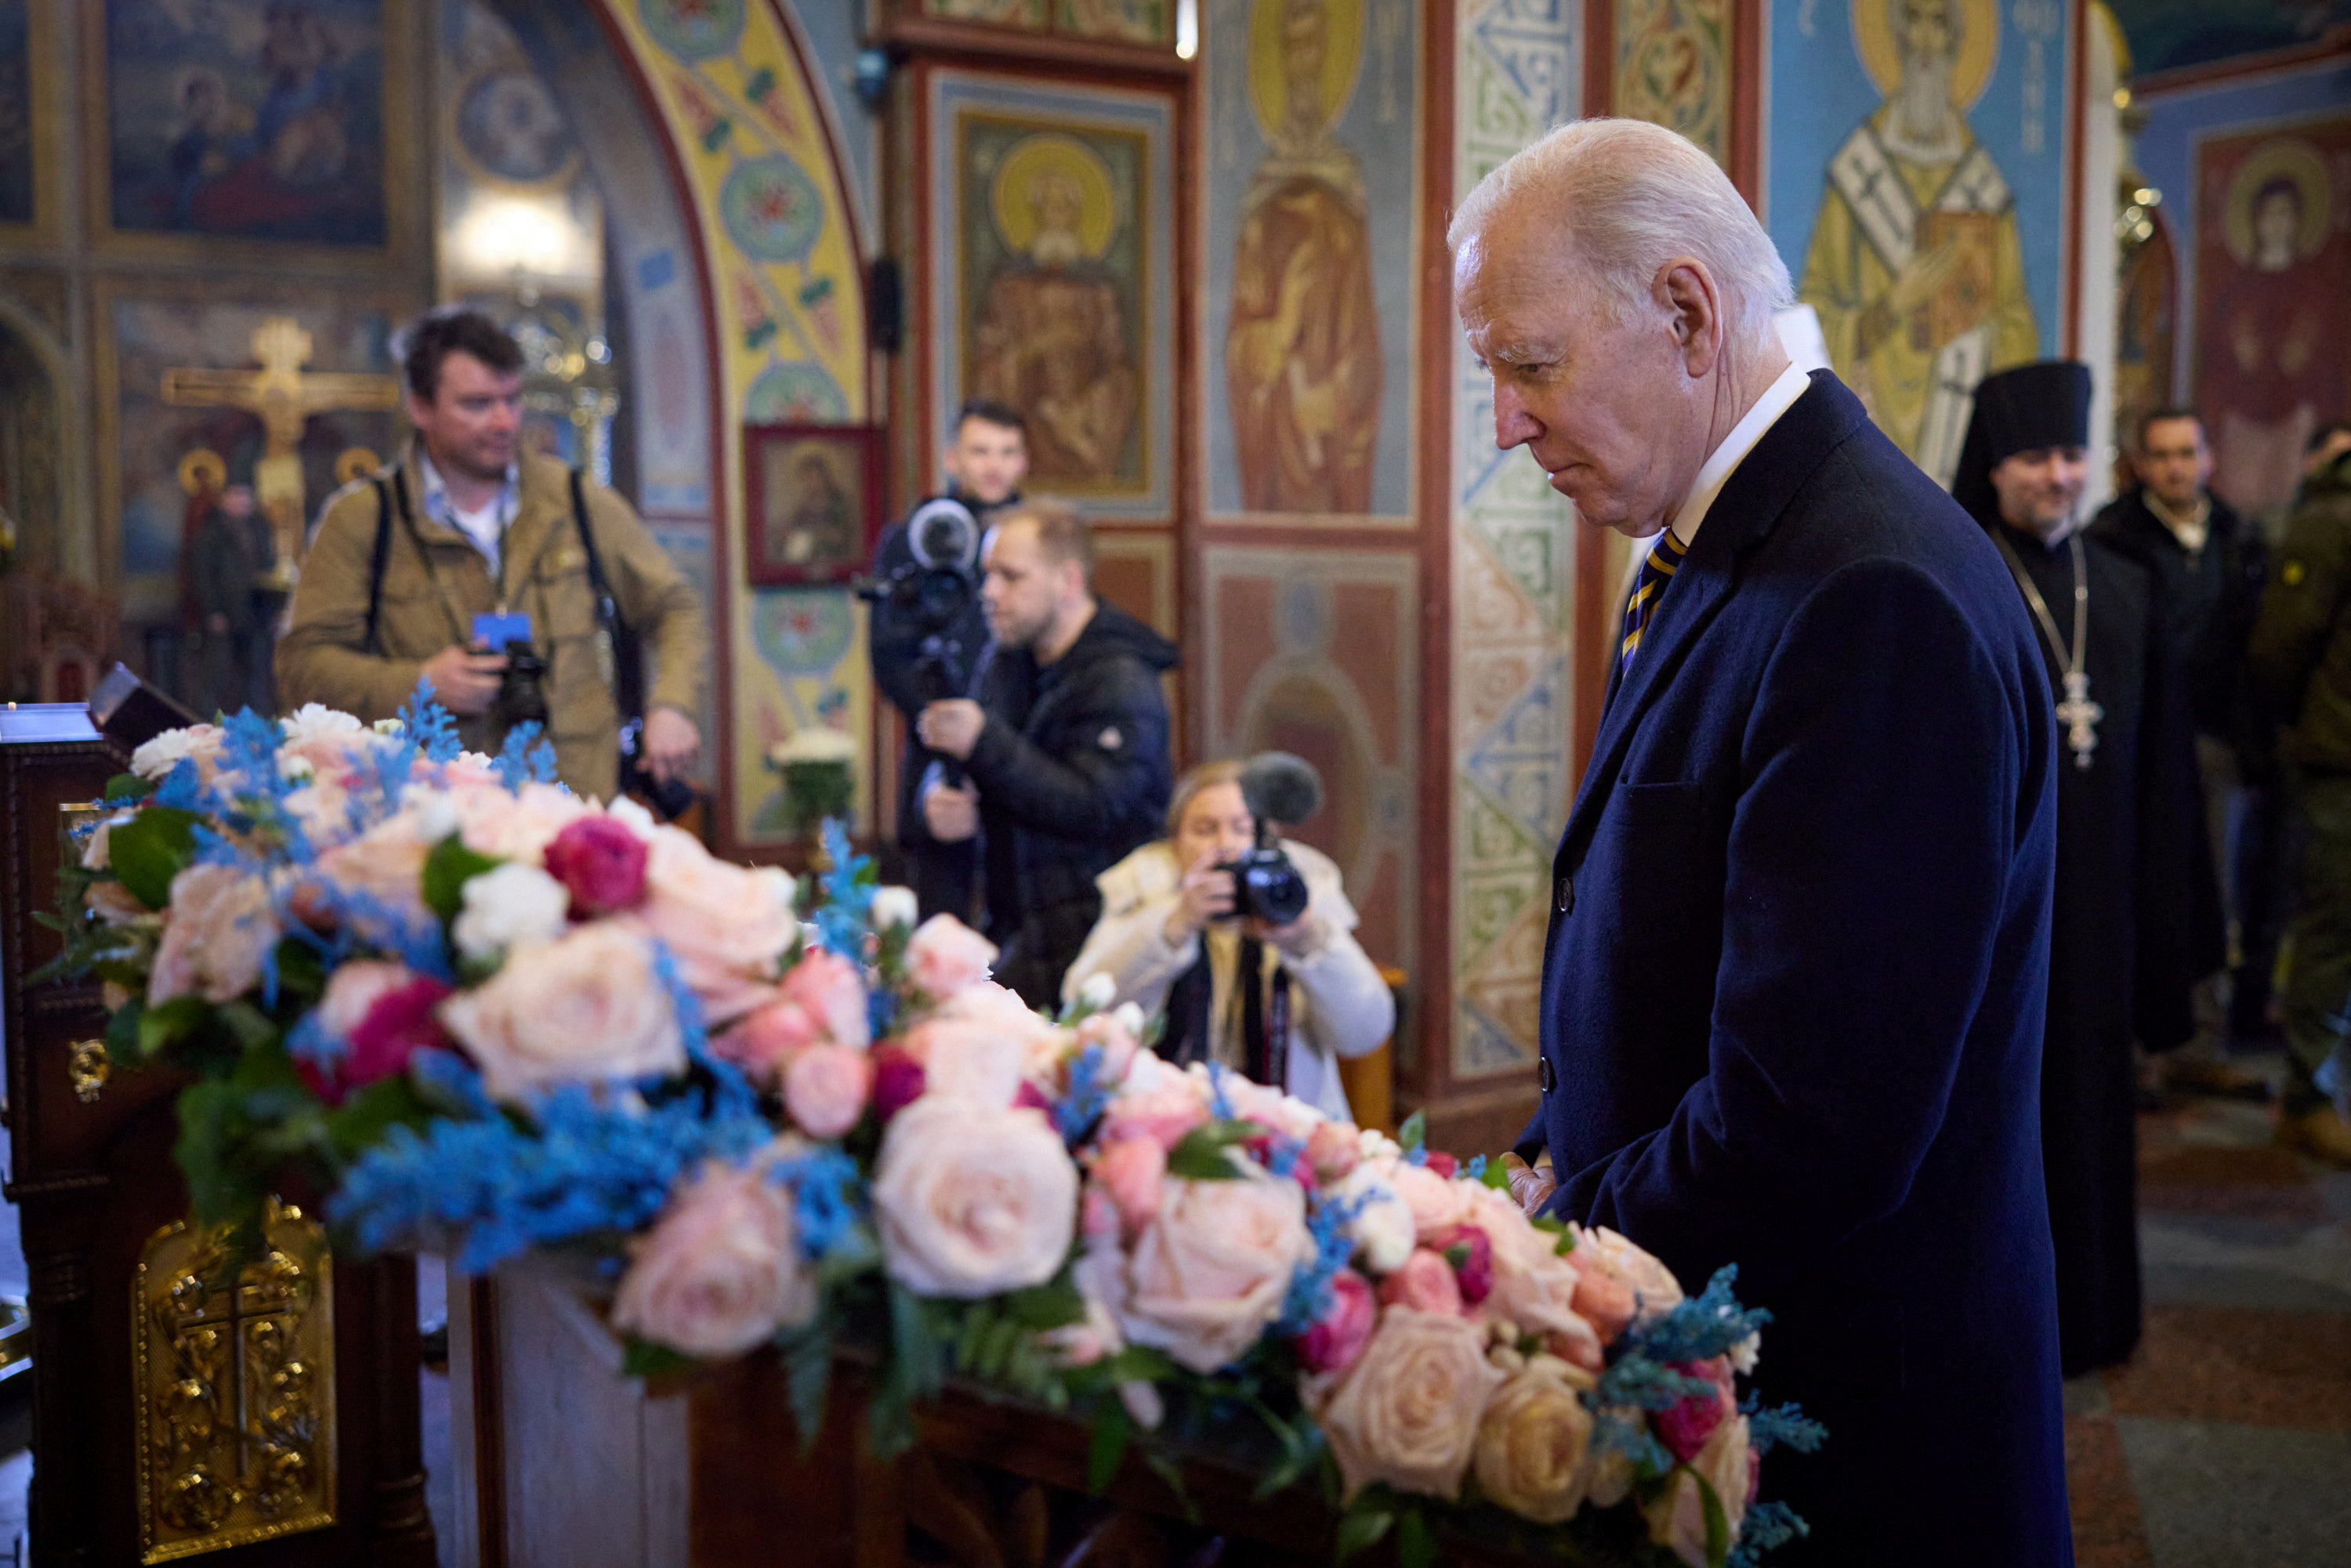 El presidente de los Estados Unidos, mira un icono ortodoxo dentro de la catedral de San Miguel.